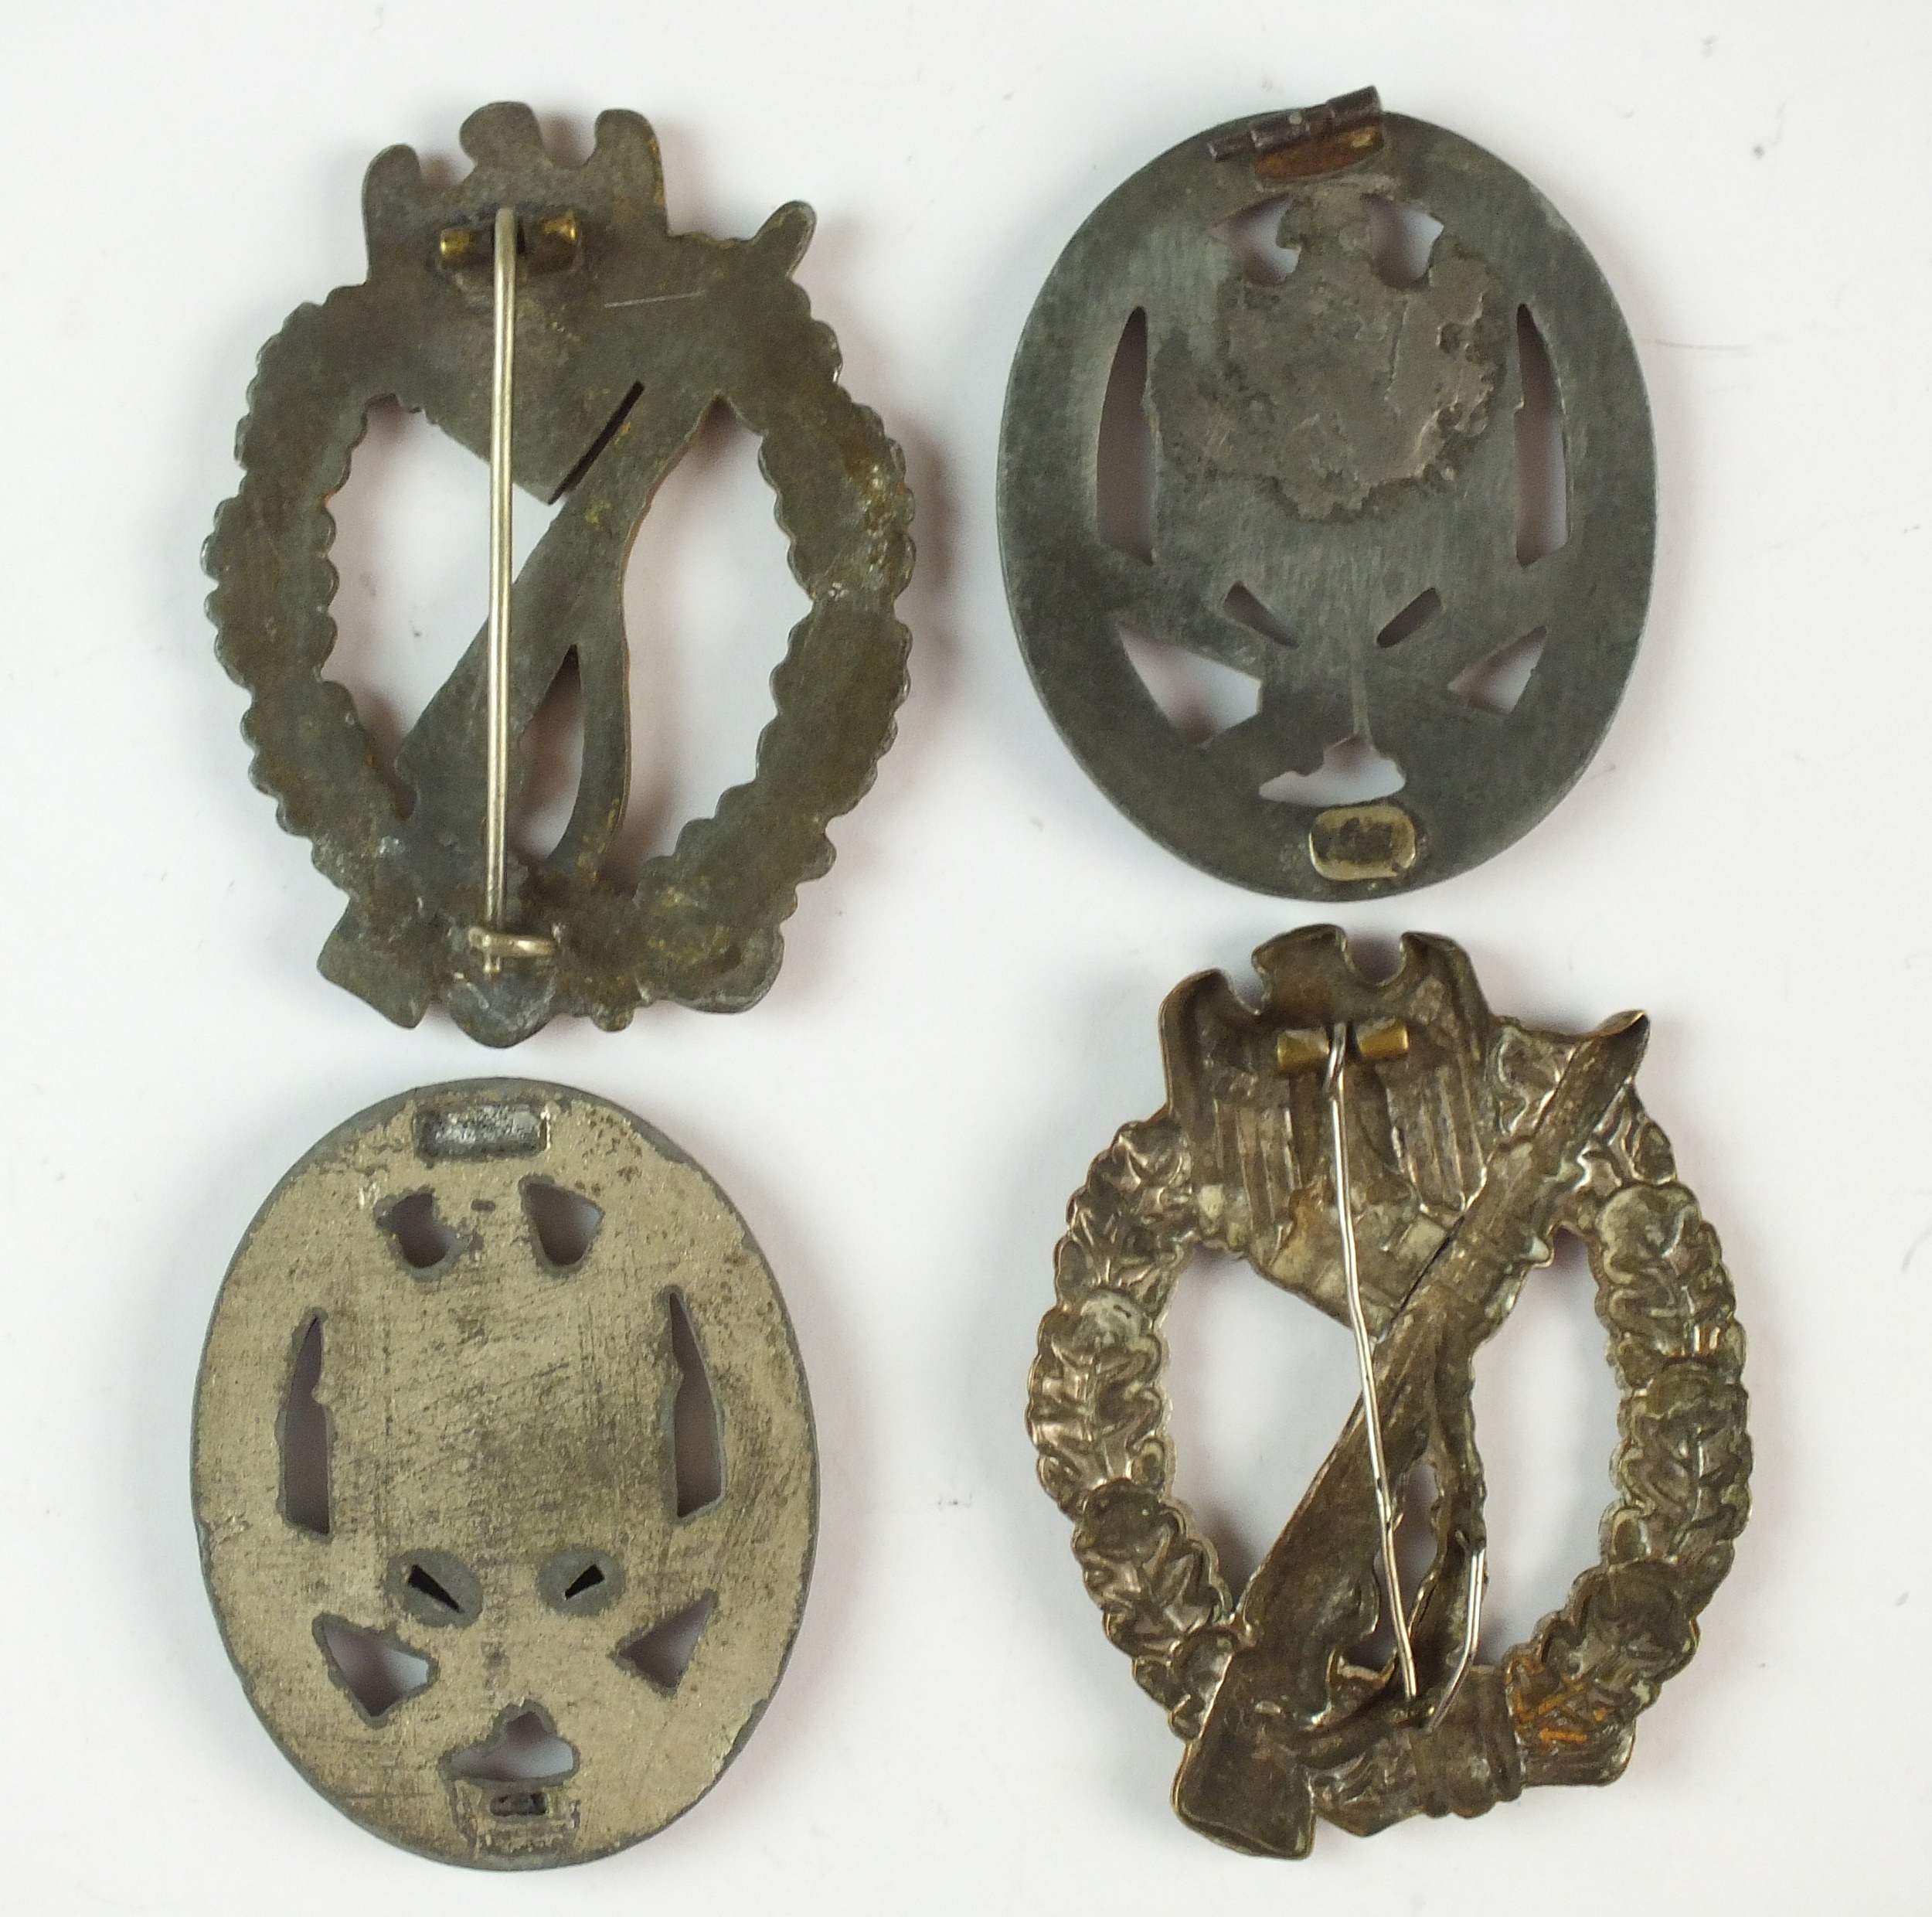 German Infantry Badges - Image 2 of 2